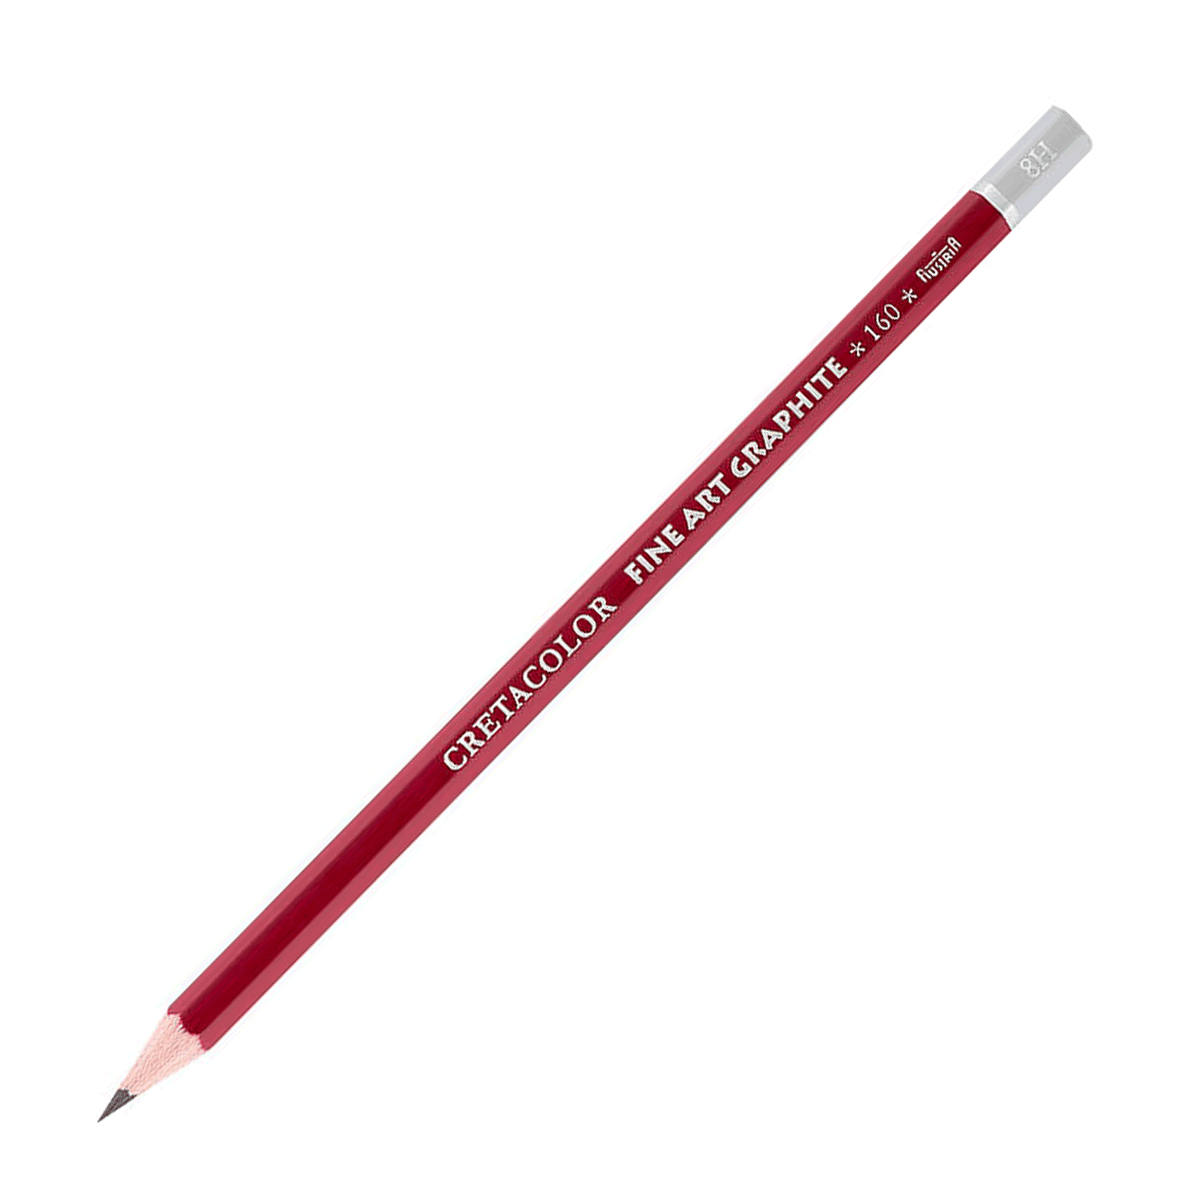 Cretacolor Fine Art Red Graphite Pencil - 8H